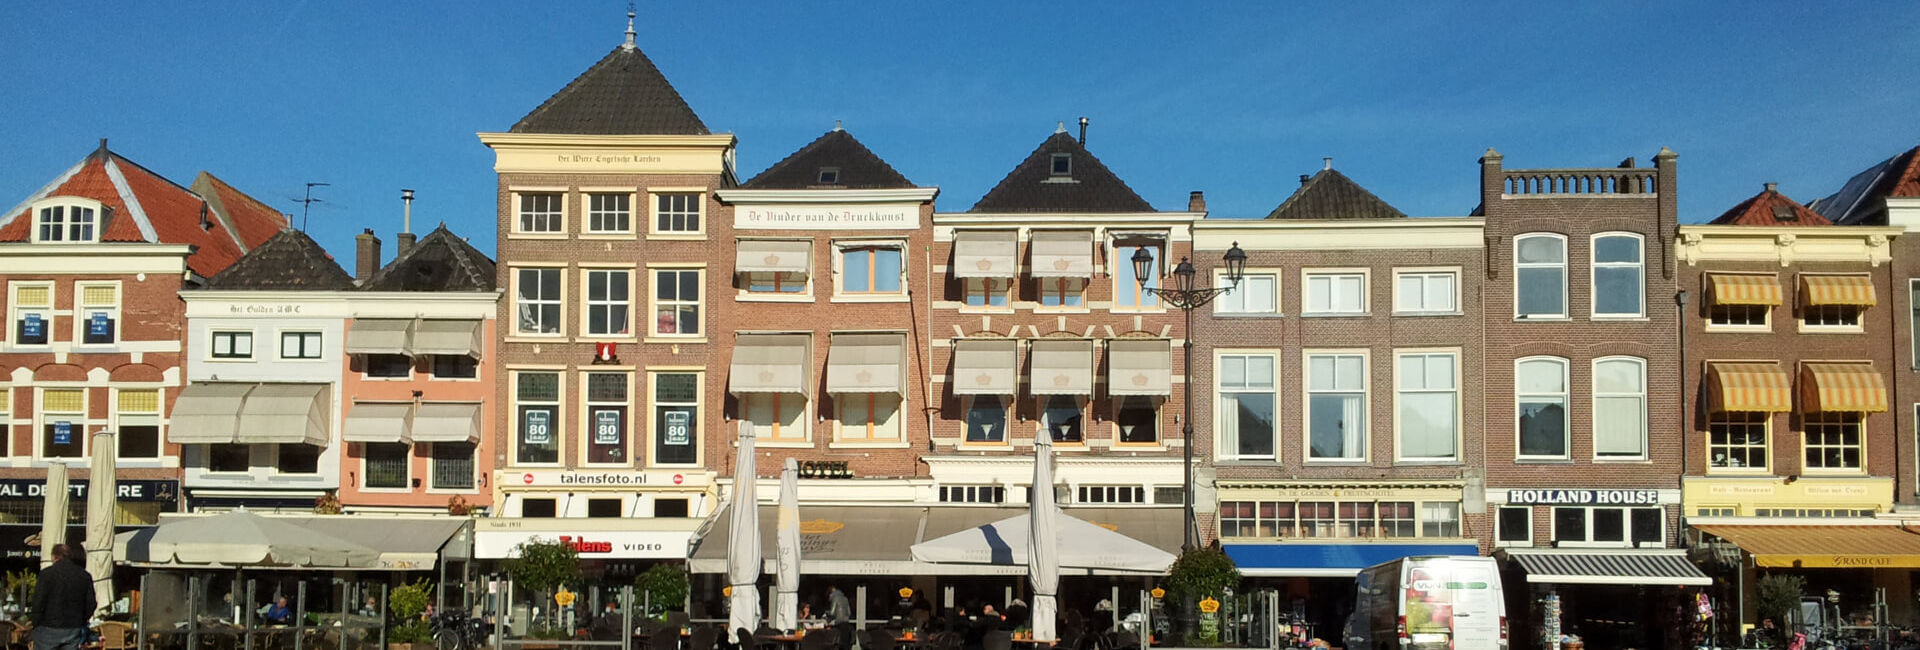 Market Square Delft - Gasterij 't Karrewiel